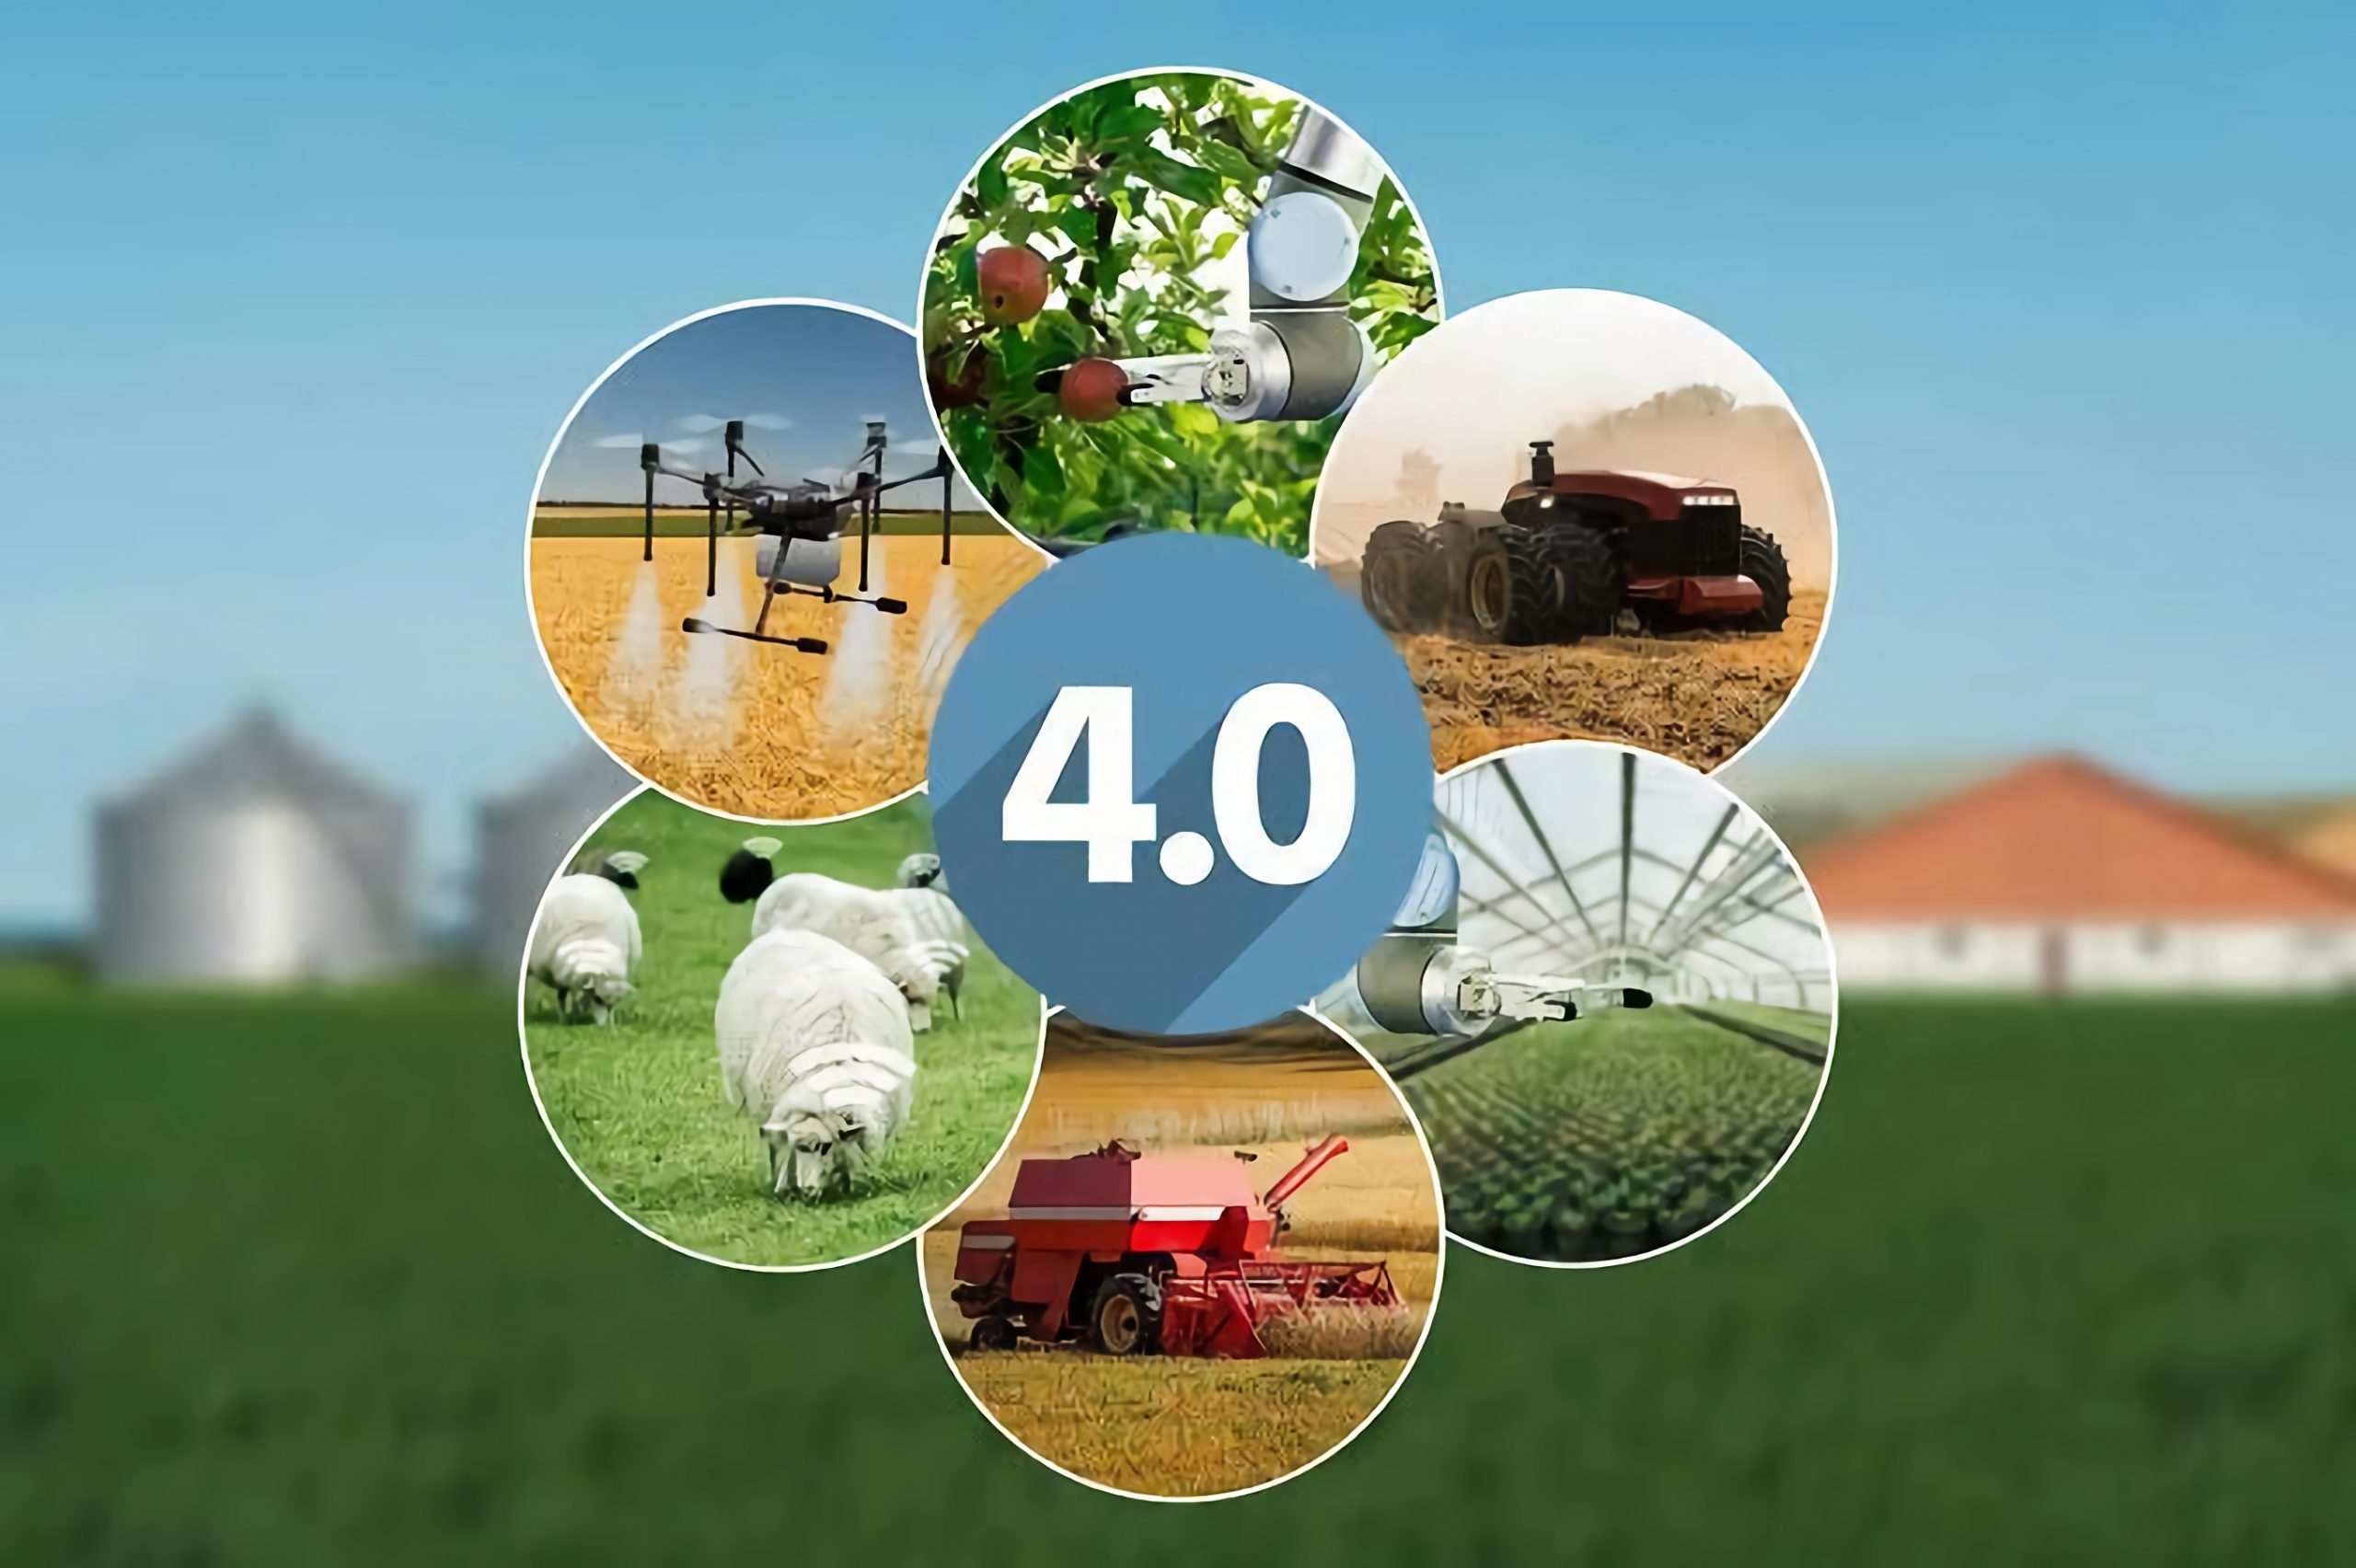 Pengembangan-pertanian-di-era-revolusi-industri-4.0